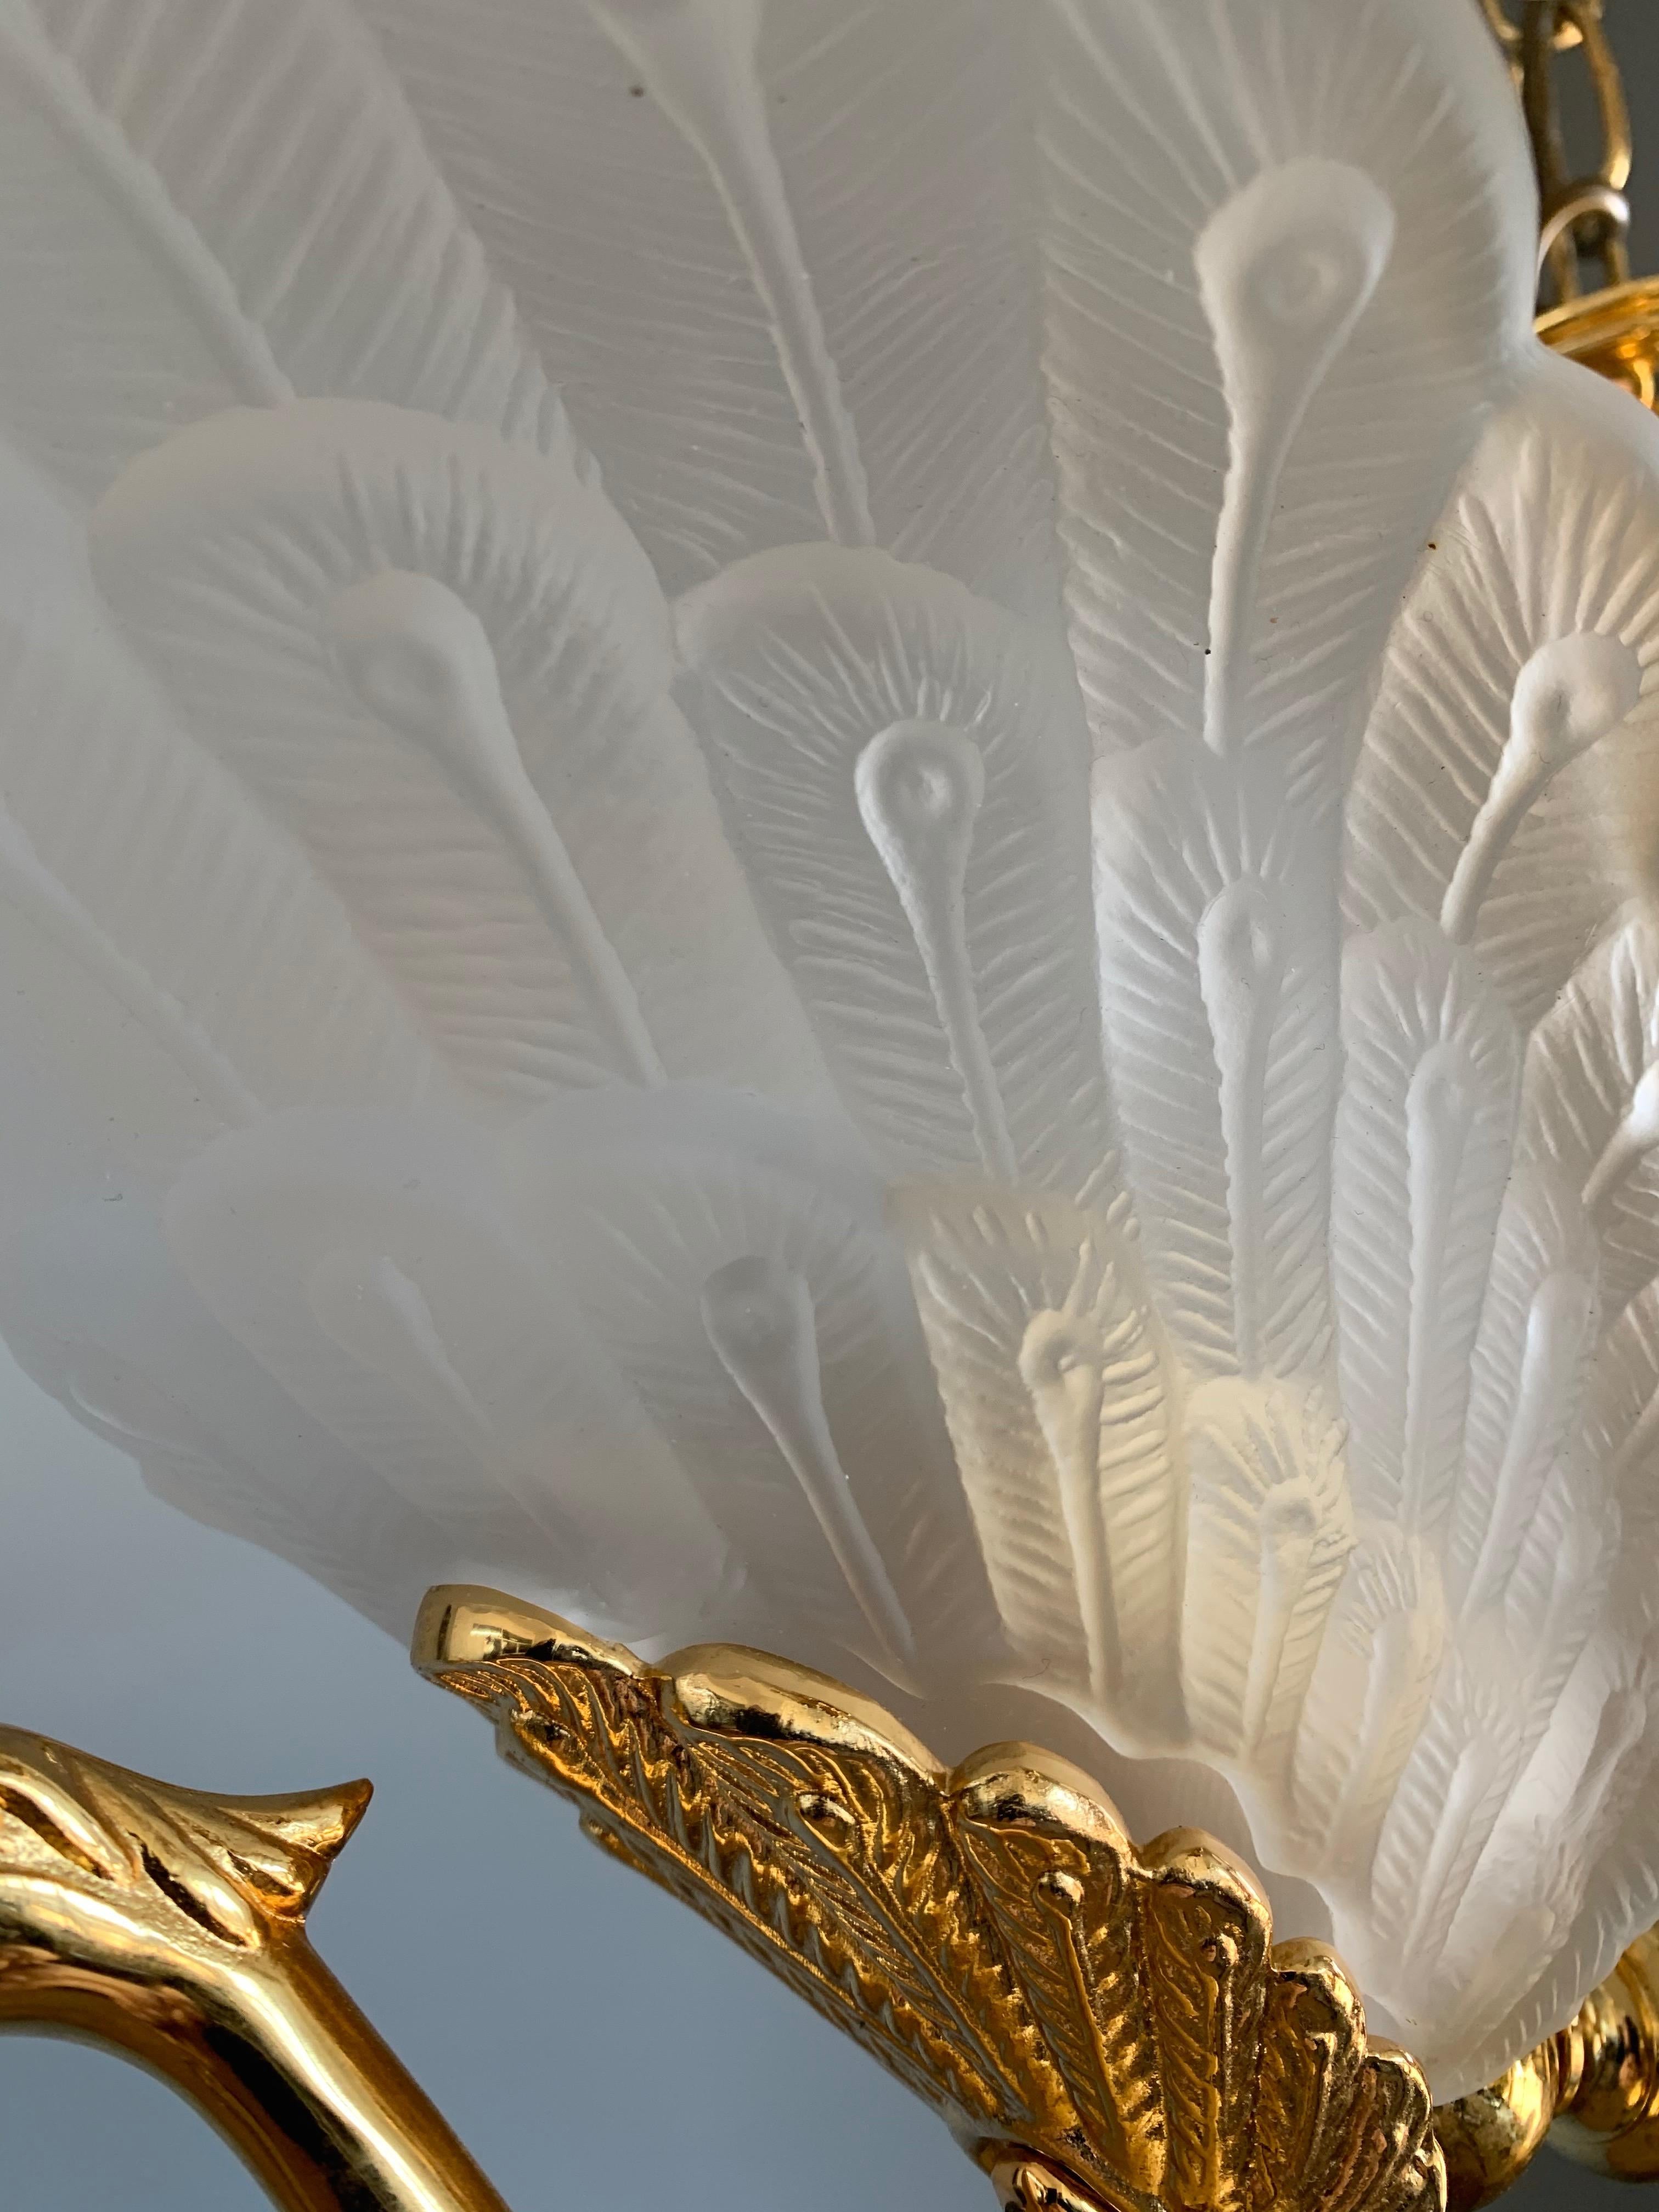 Rare Midcentury Chandelier / Pendant w. Golden Bronze & Glass Peacock Sculptures 5